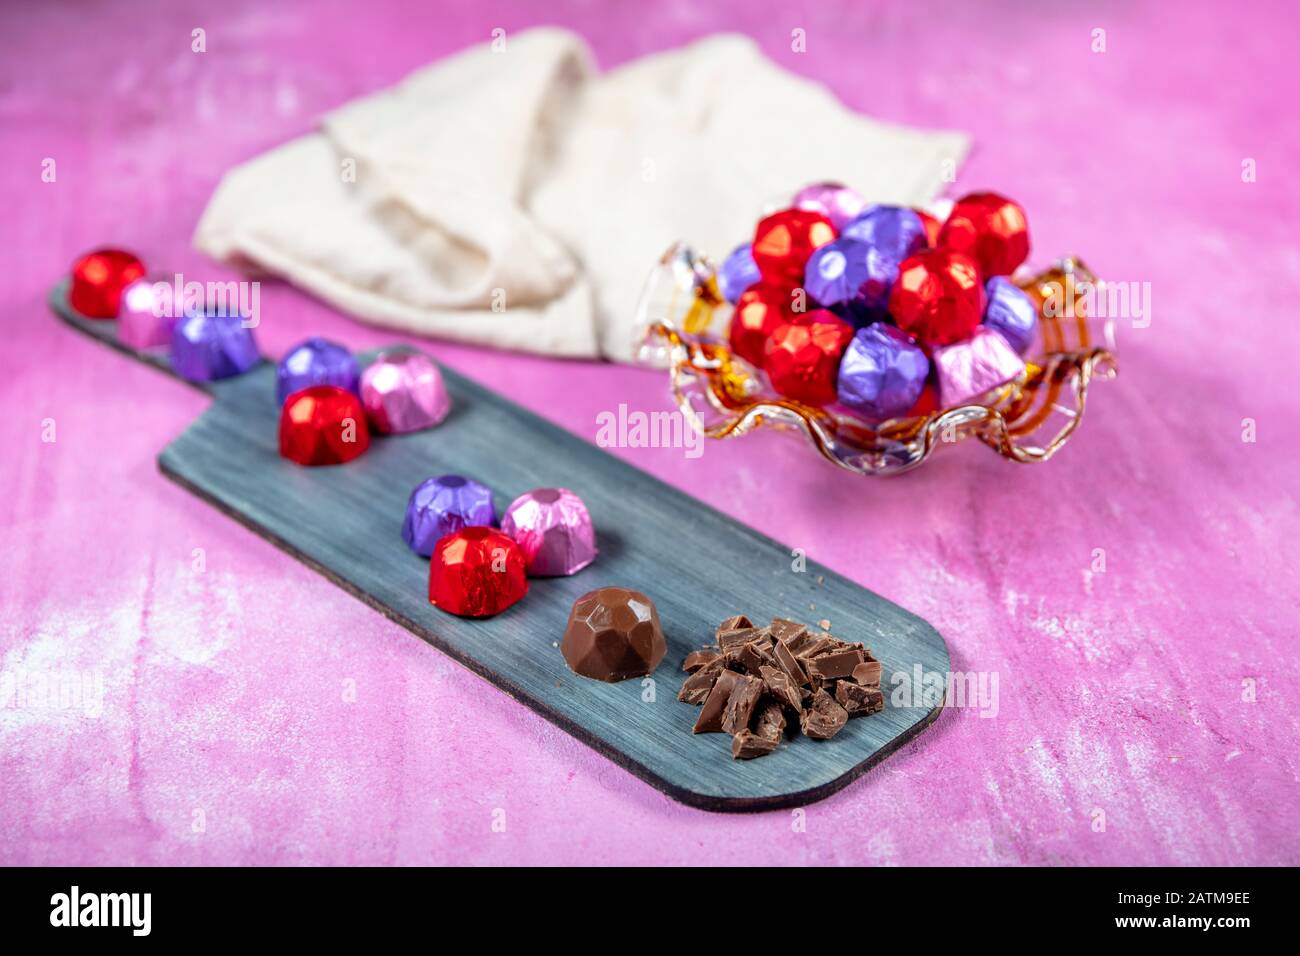 Cioccolato alla nocciola; cioccolato alla nocciola ricoperto di lamina rossa, viola e rosa su fondo lila di legno. EID al-Fitr (Festa del Ramadan) concetto. Foto Stock